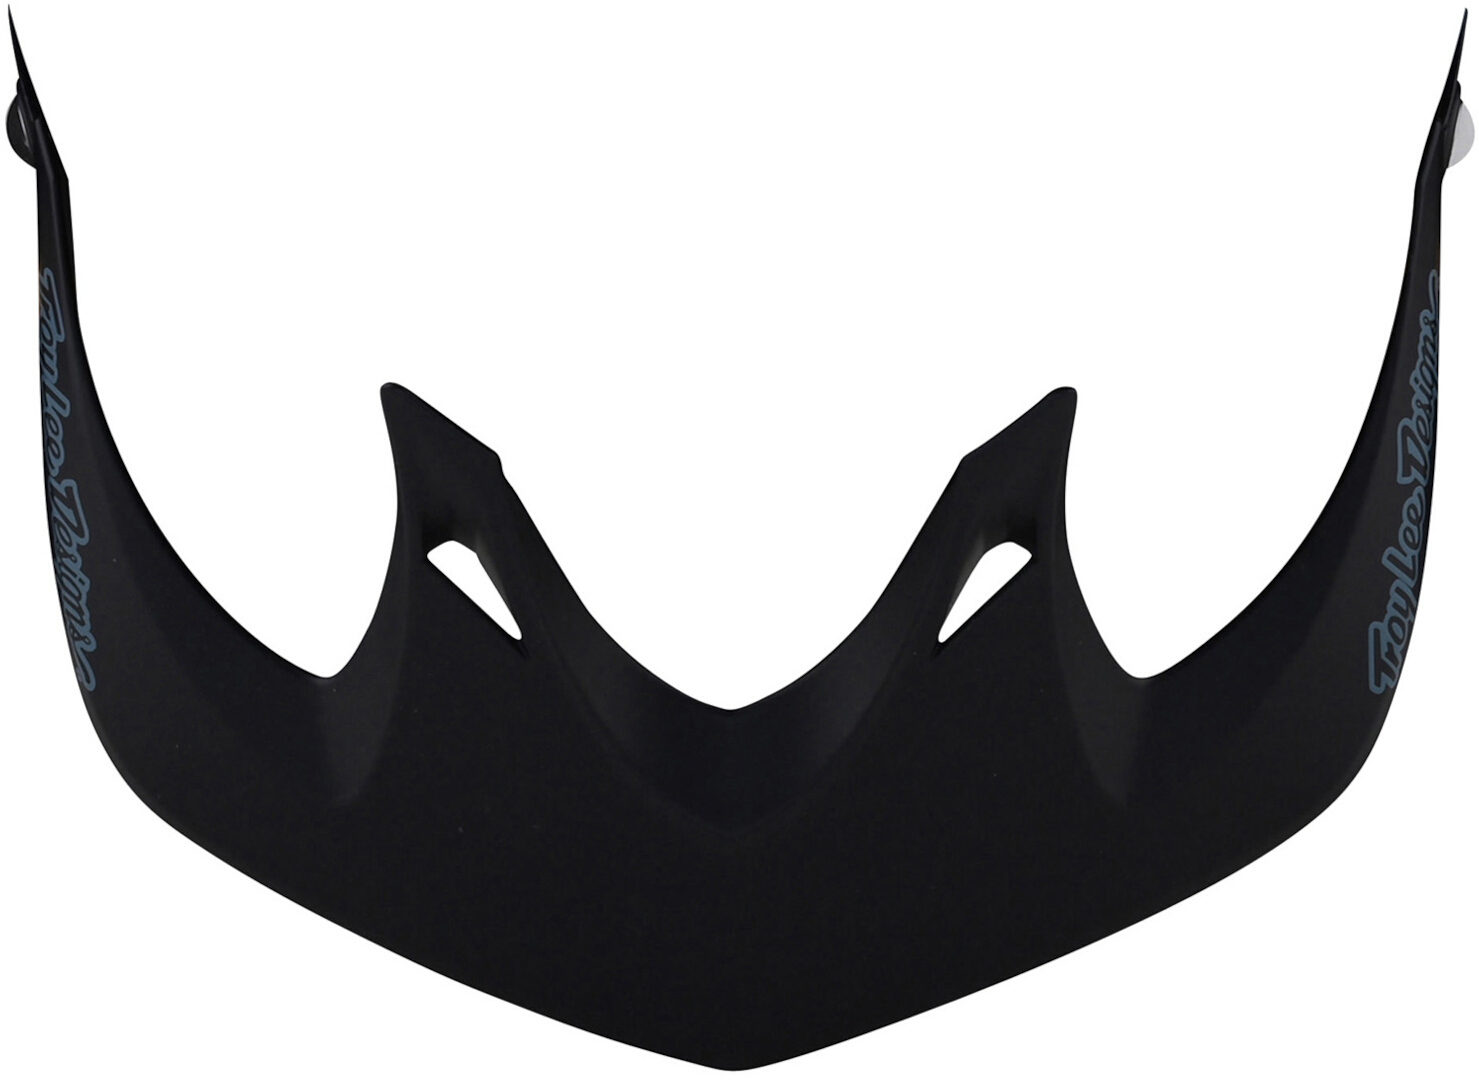 Пик защитный Troy Lee Designs A1 для шлема, черный/серый